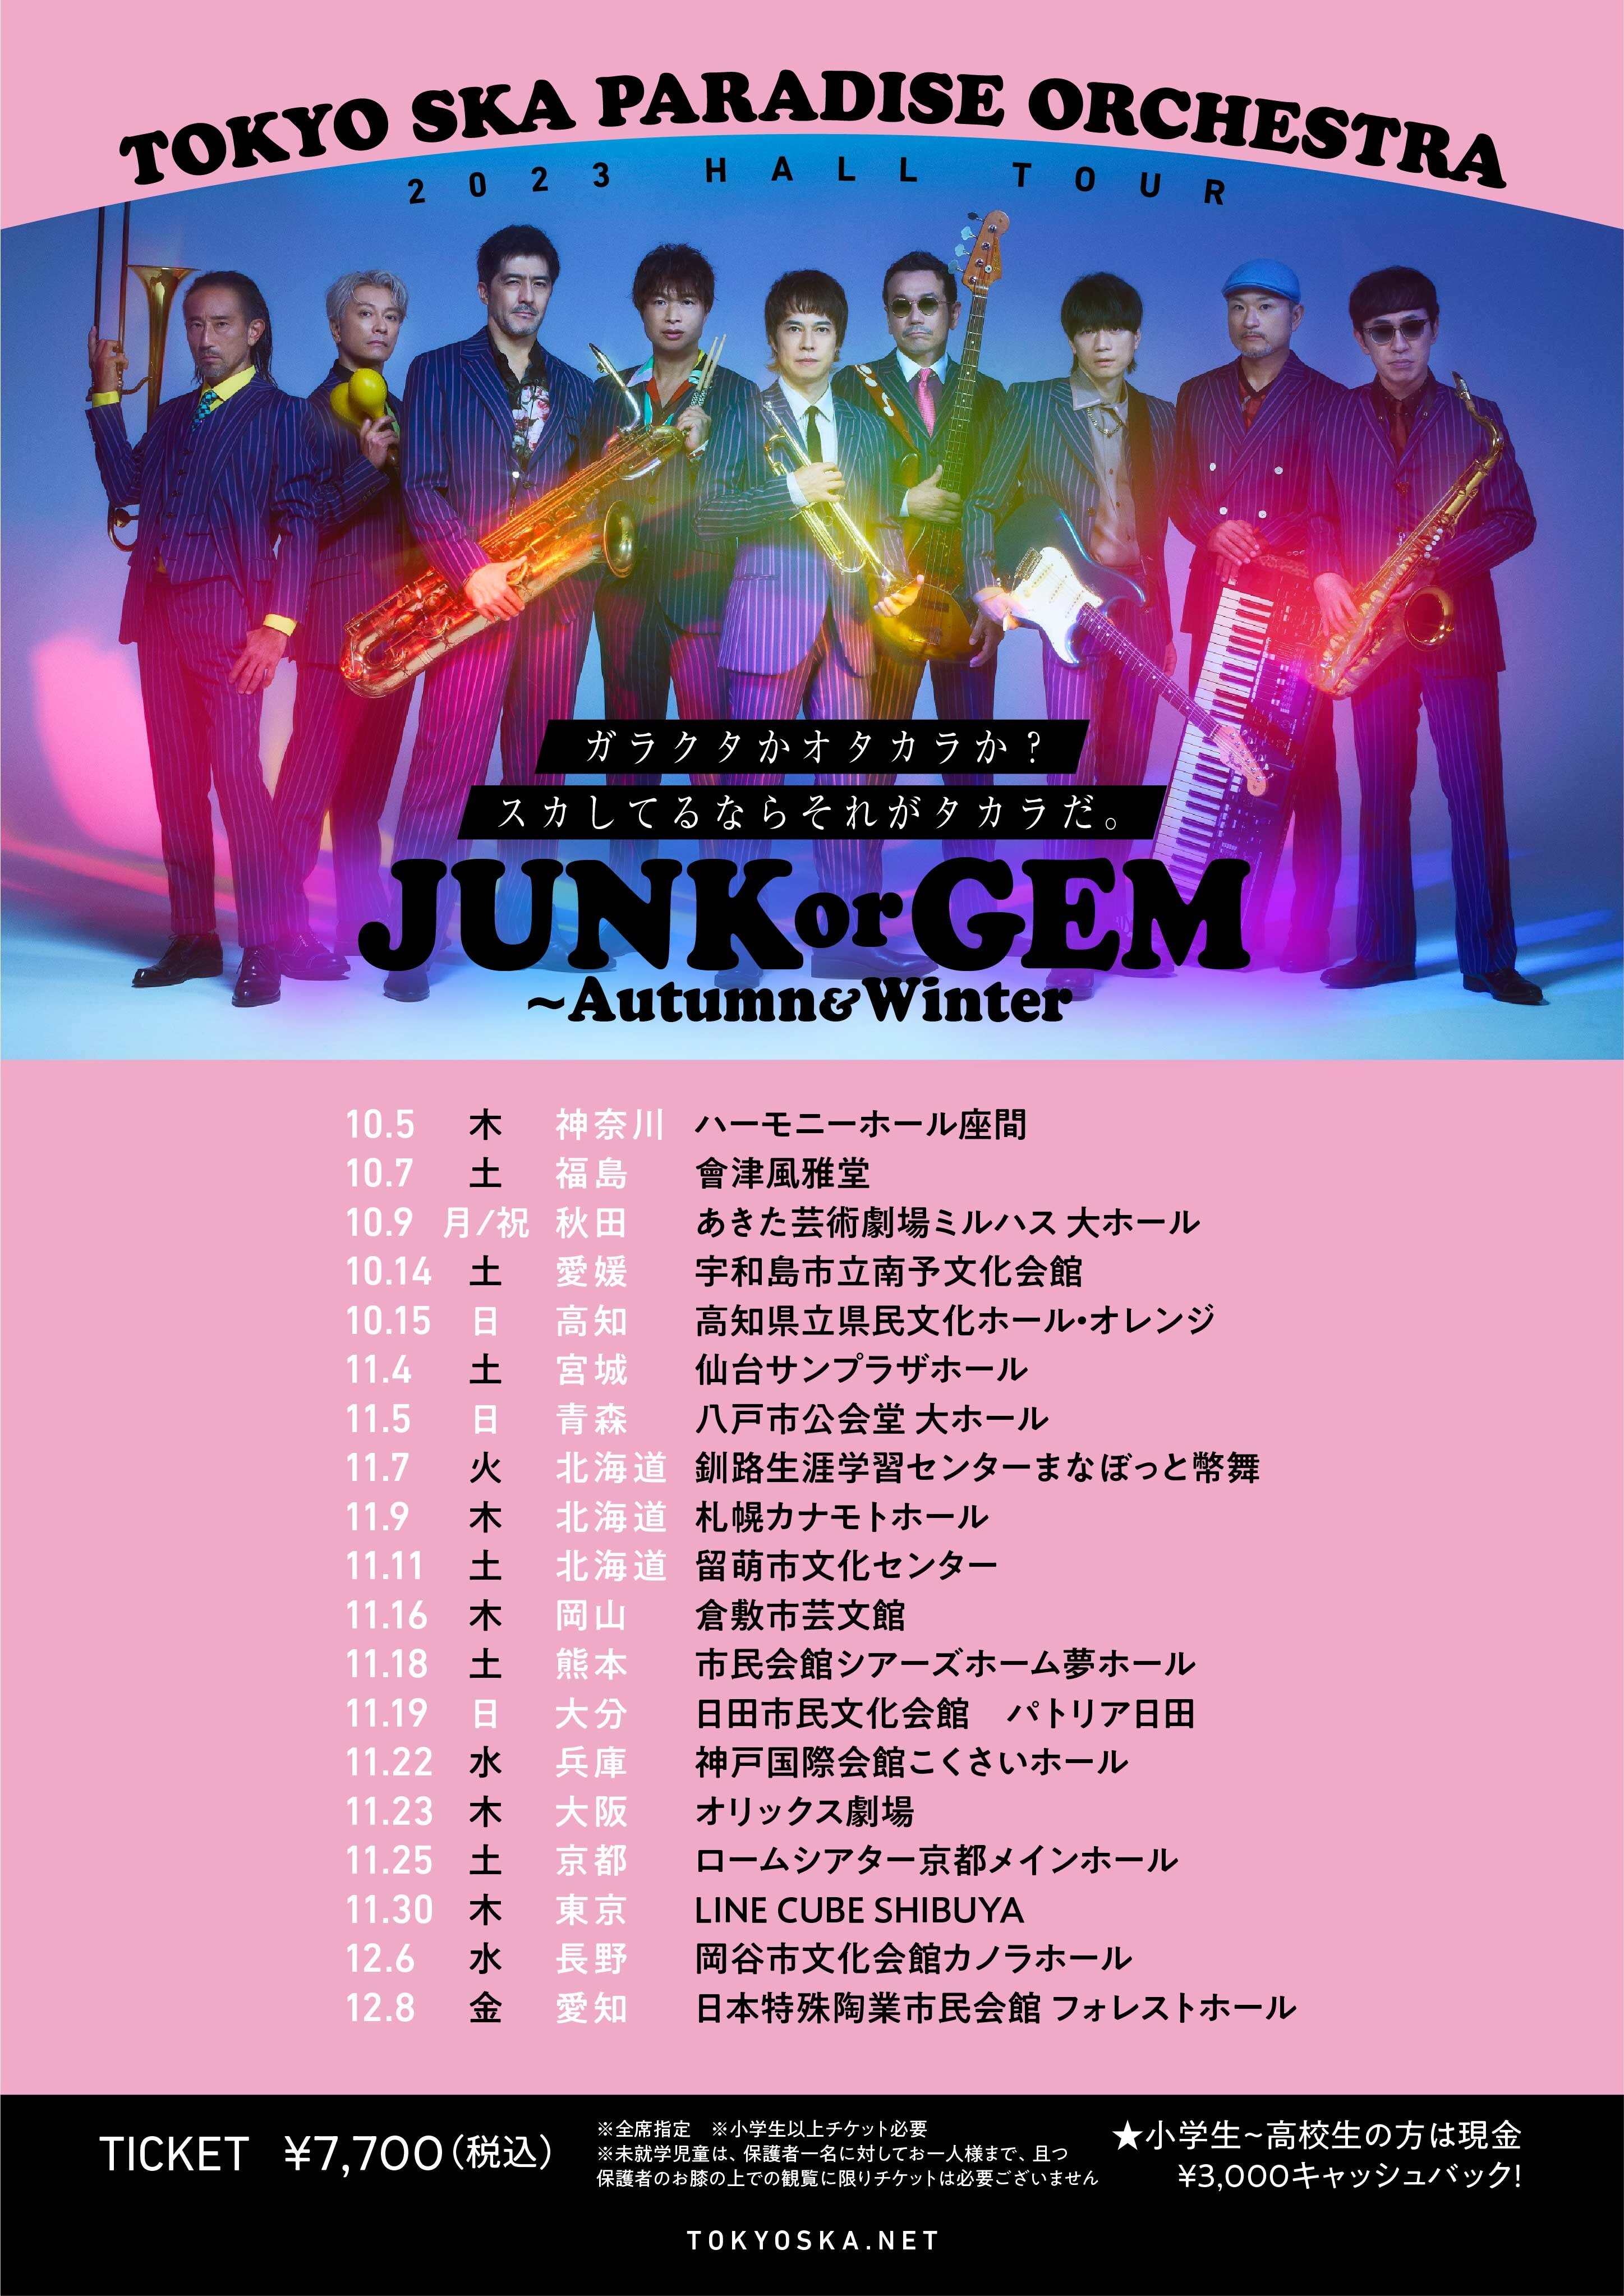 2023 HALL TOUR 「JUNK or GEM ～Autumn＆Winter」詳細決定！ - NEWS ...